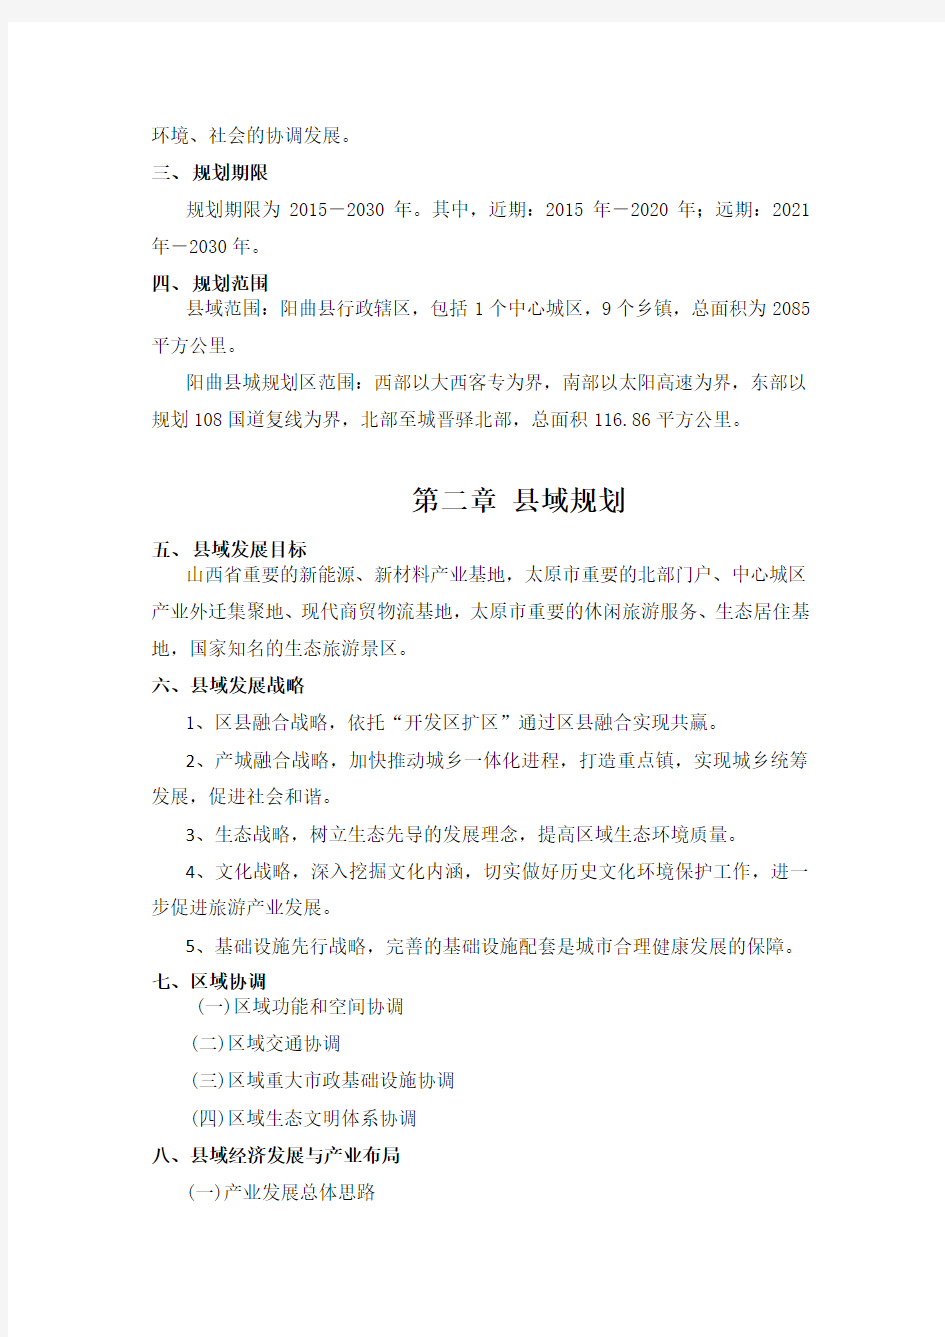 阳曲县城总体规划(2015-2030)简要说明及发展